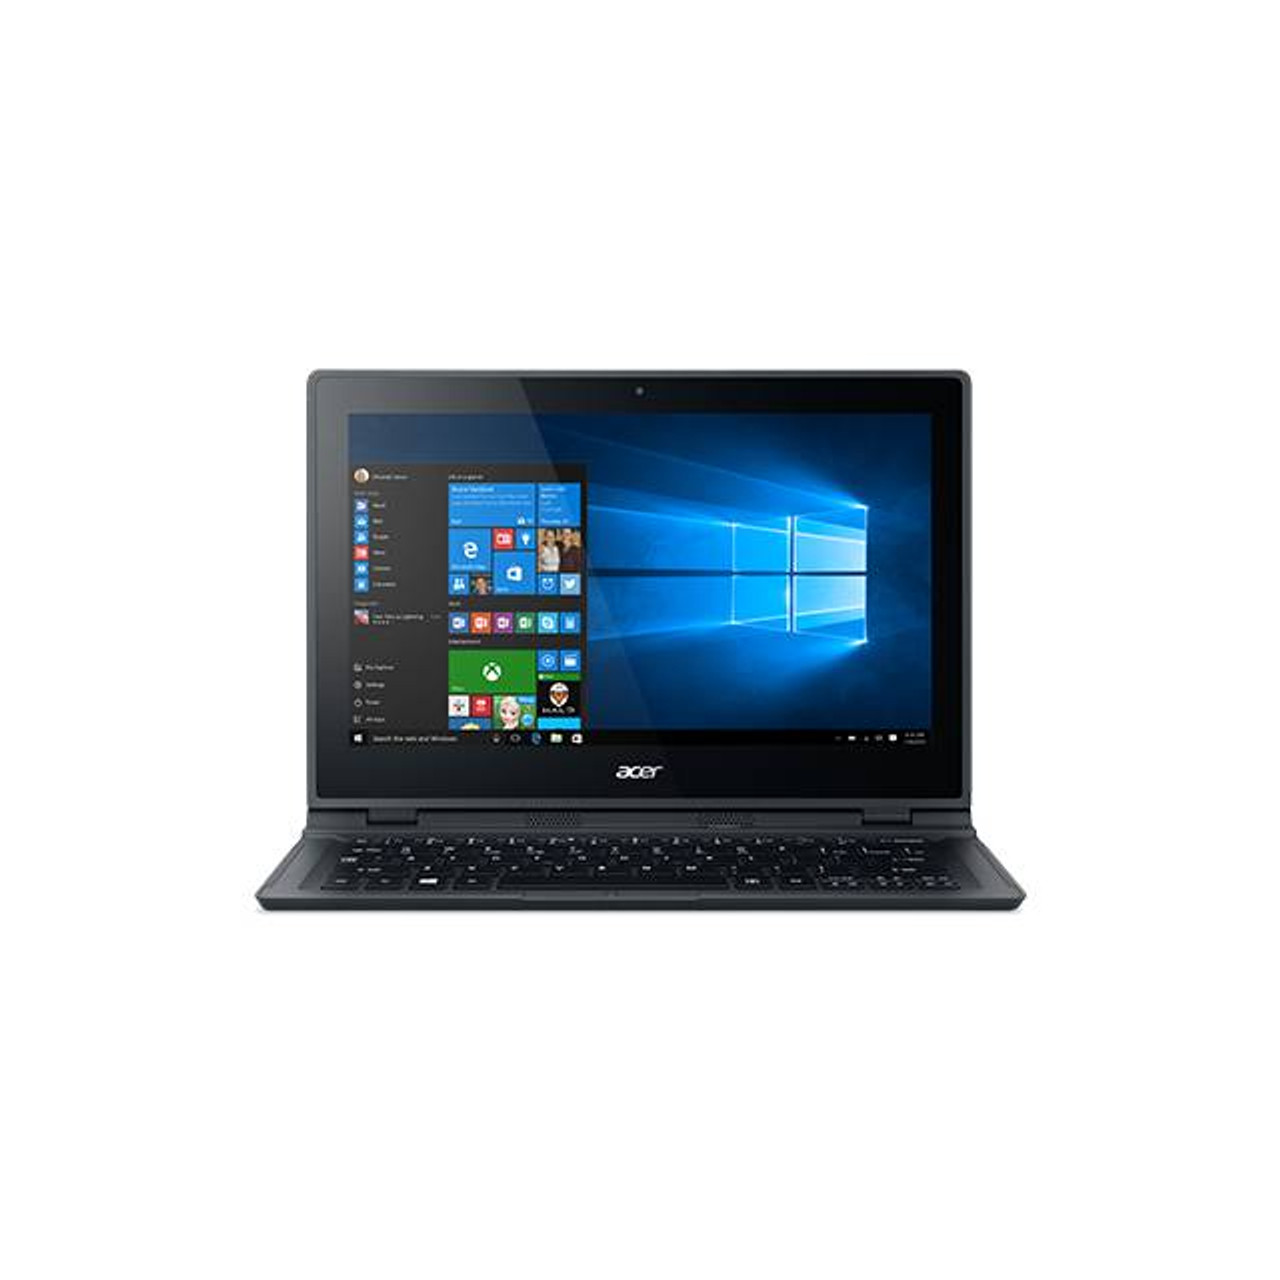 Acer Aspire Switch 12 SW5-271-64V2 12.5 inch Touchscreen Intel Core M-5Y10c 800MHz/ 4GB DDR3L/ 128GB SSD / No ODD/ Windows 8.1 Tablet w/ Keyboard (Black)